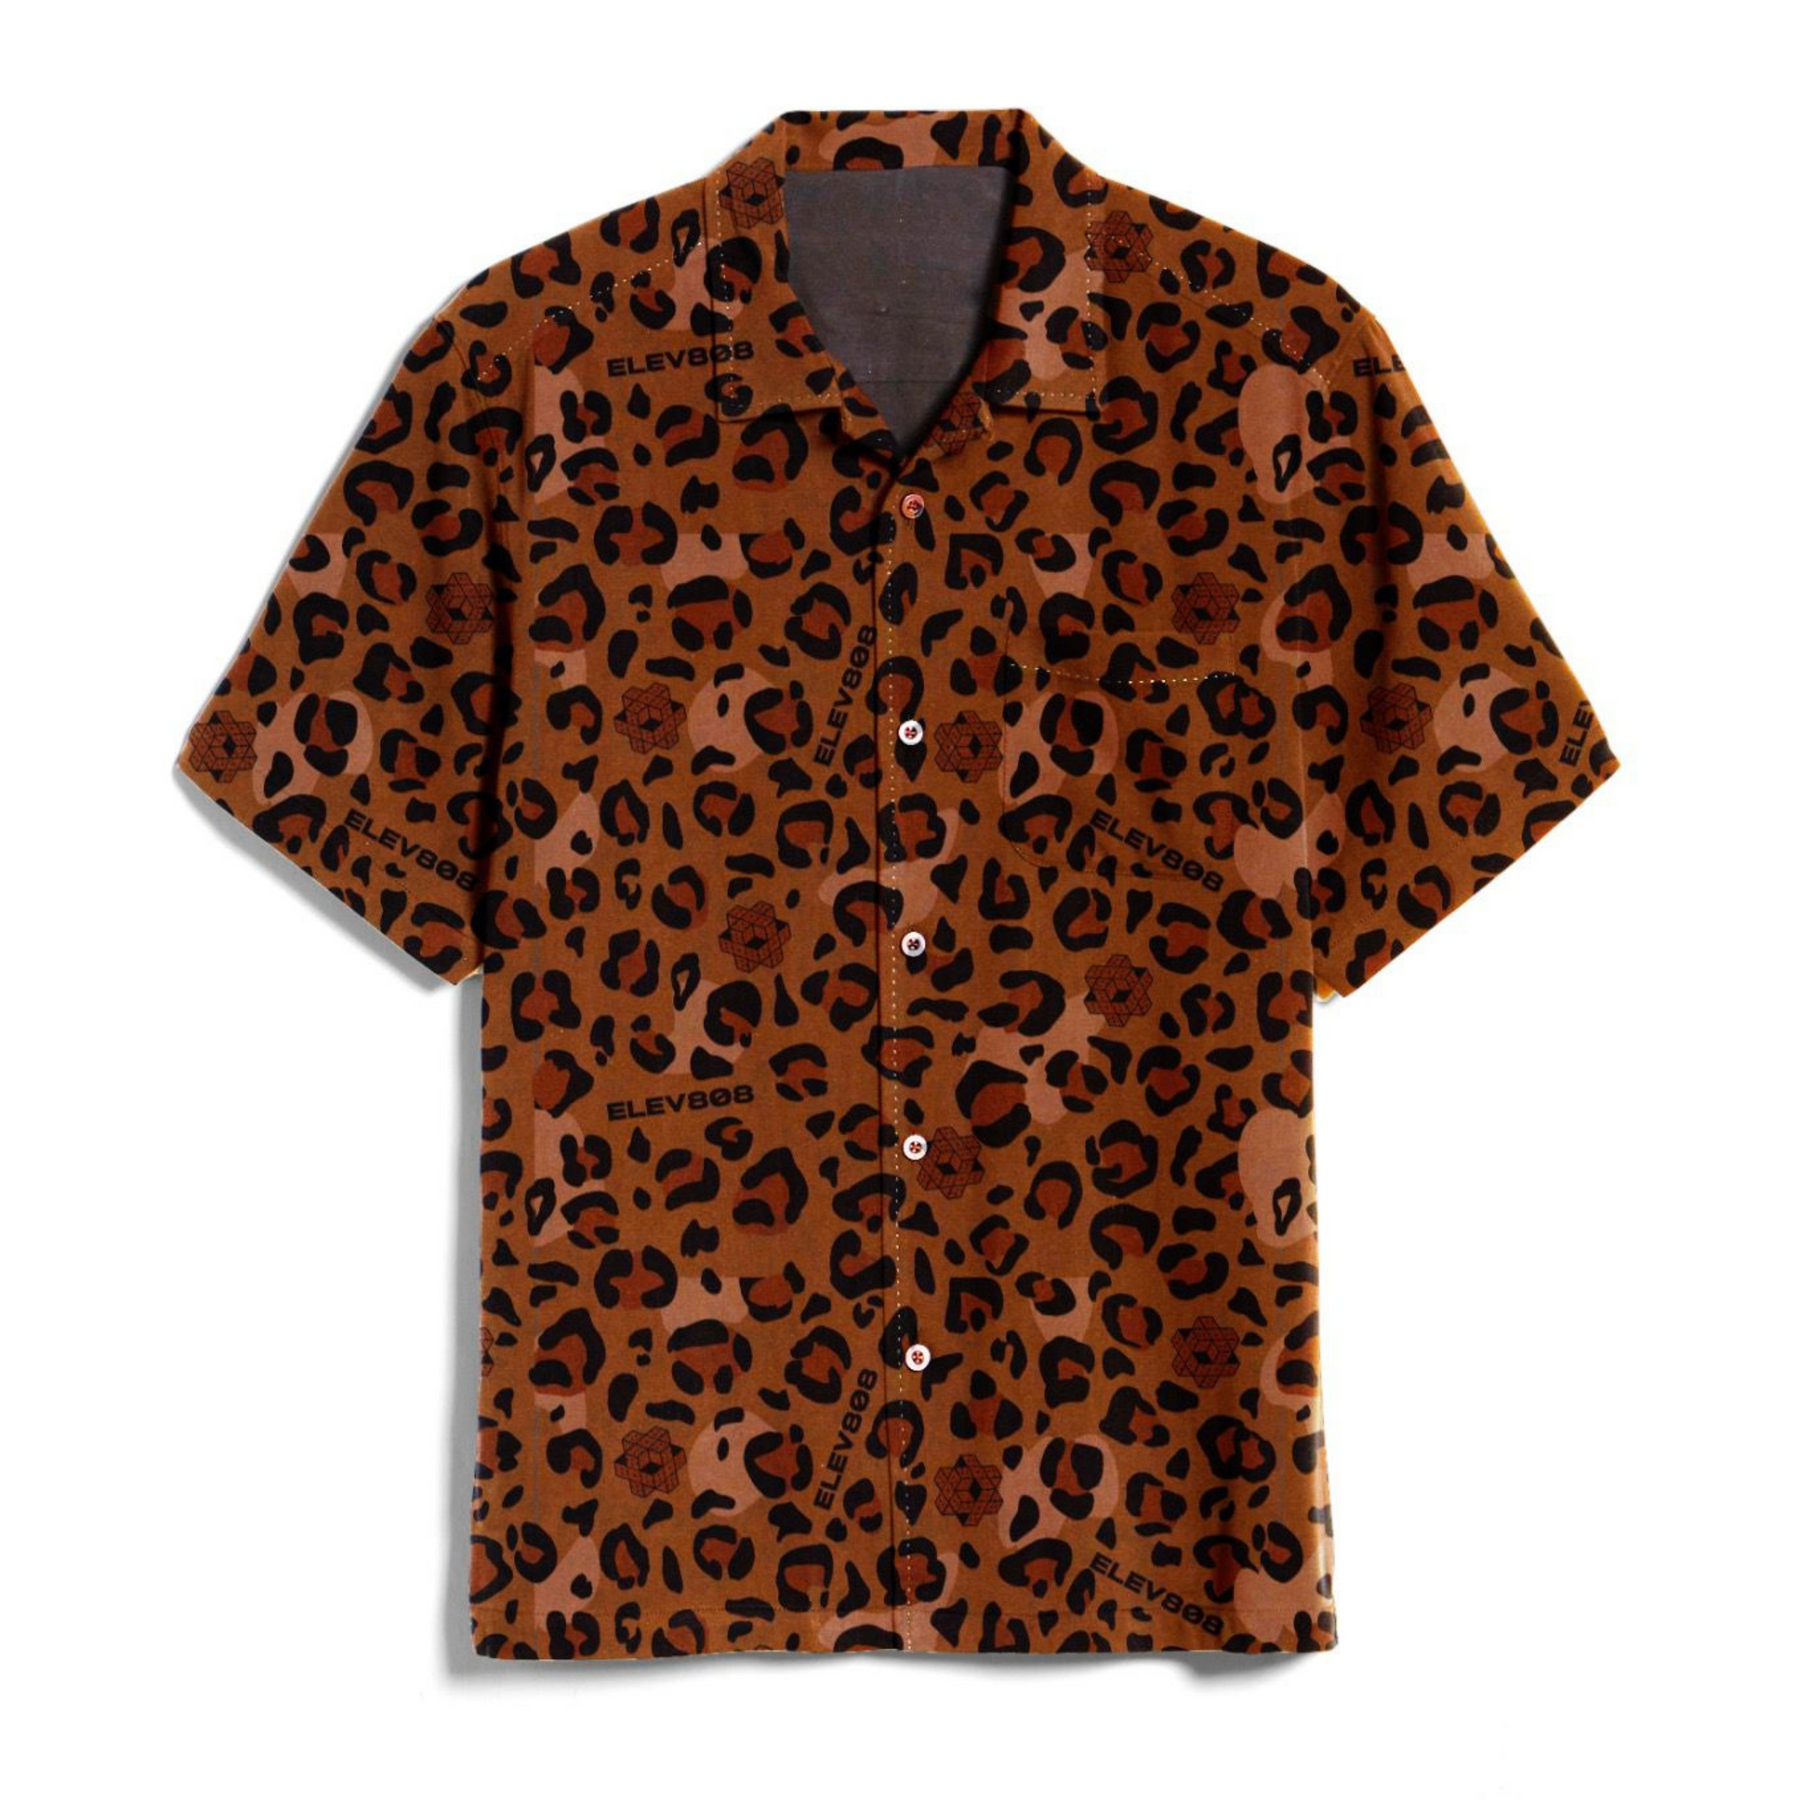 808 Leopard Party Shirt (pre-sale)